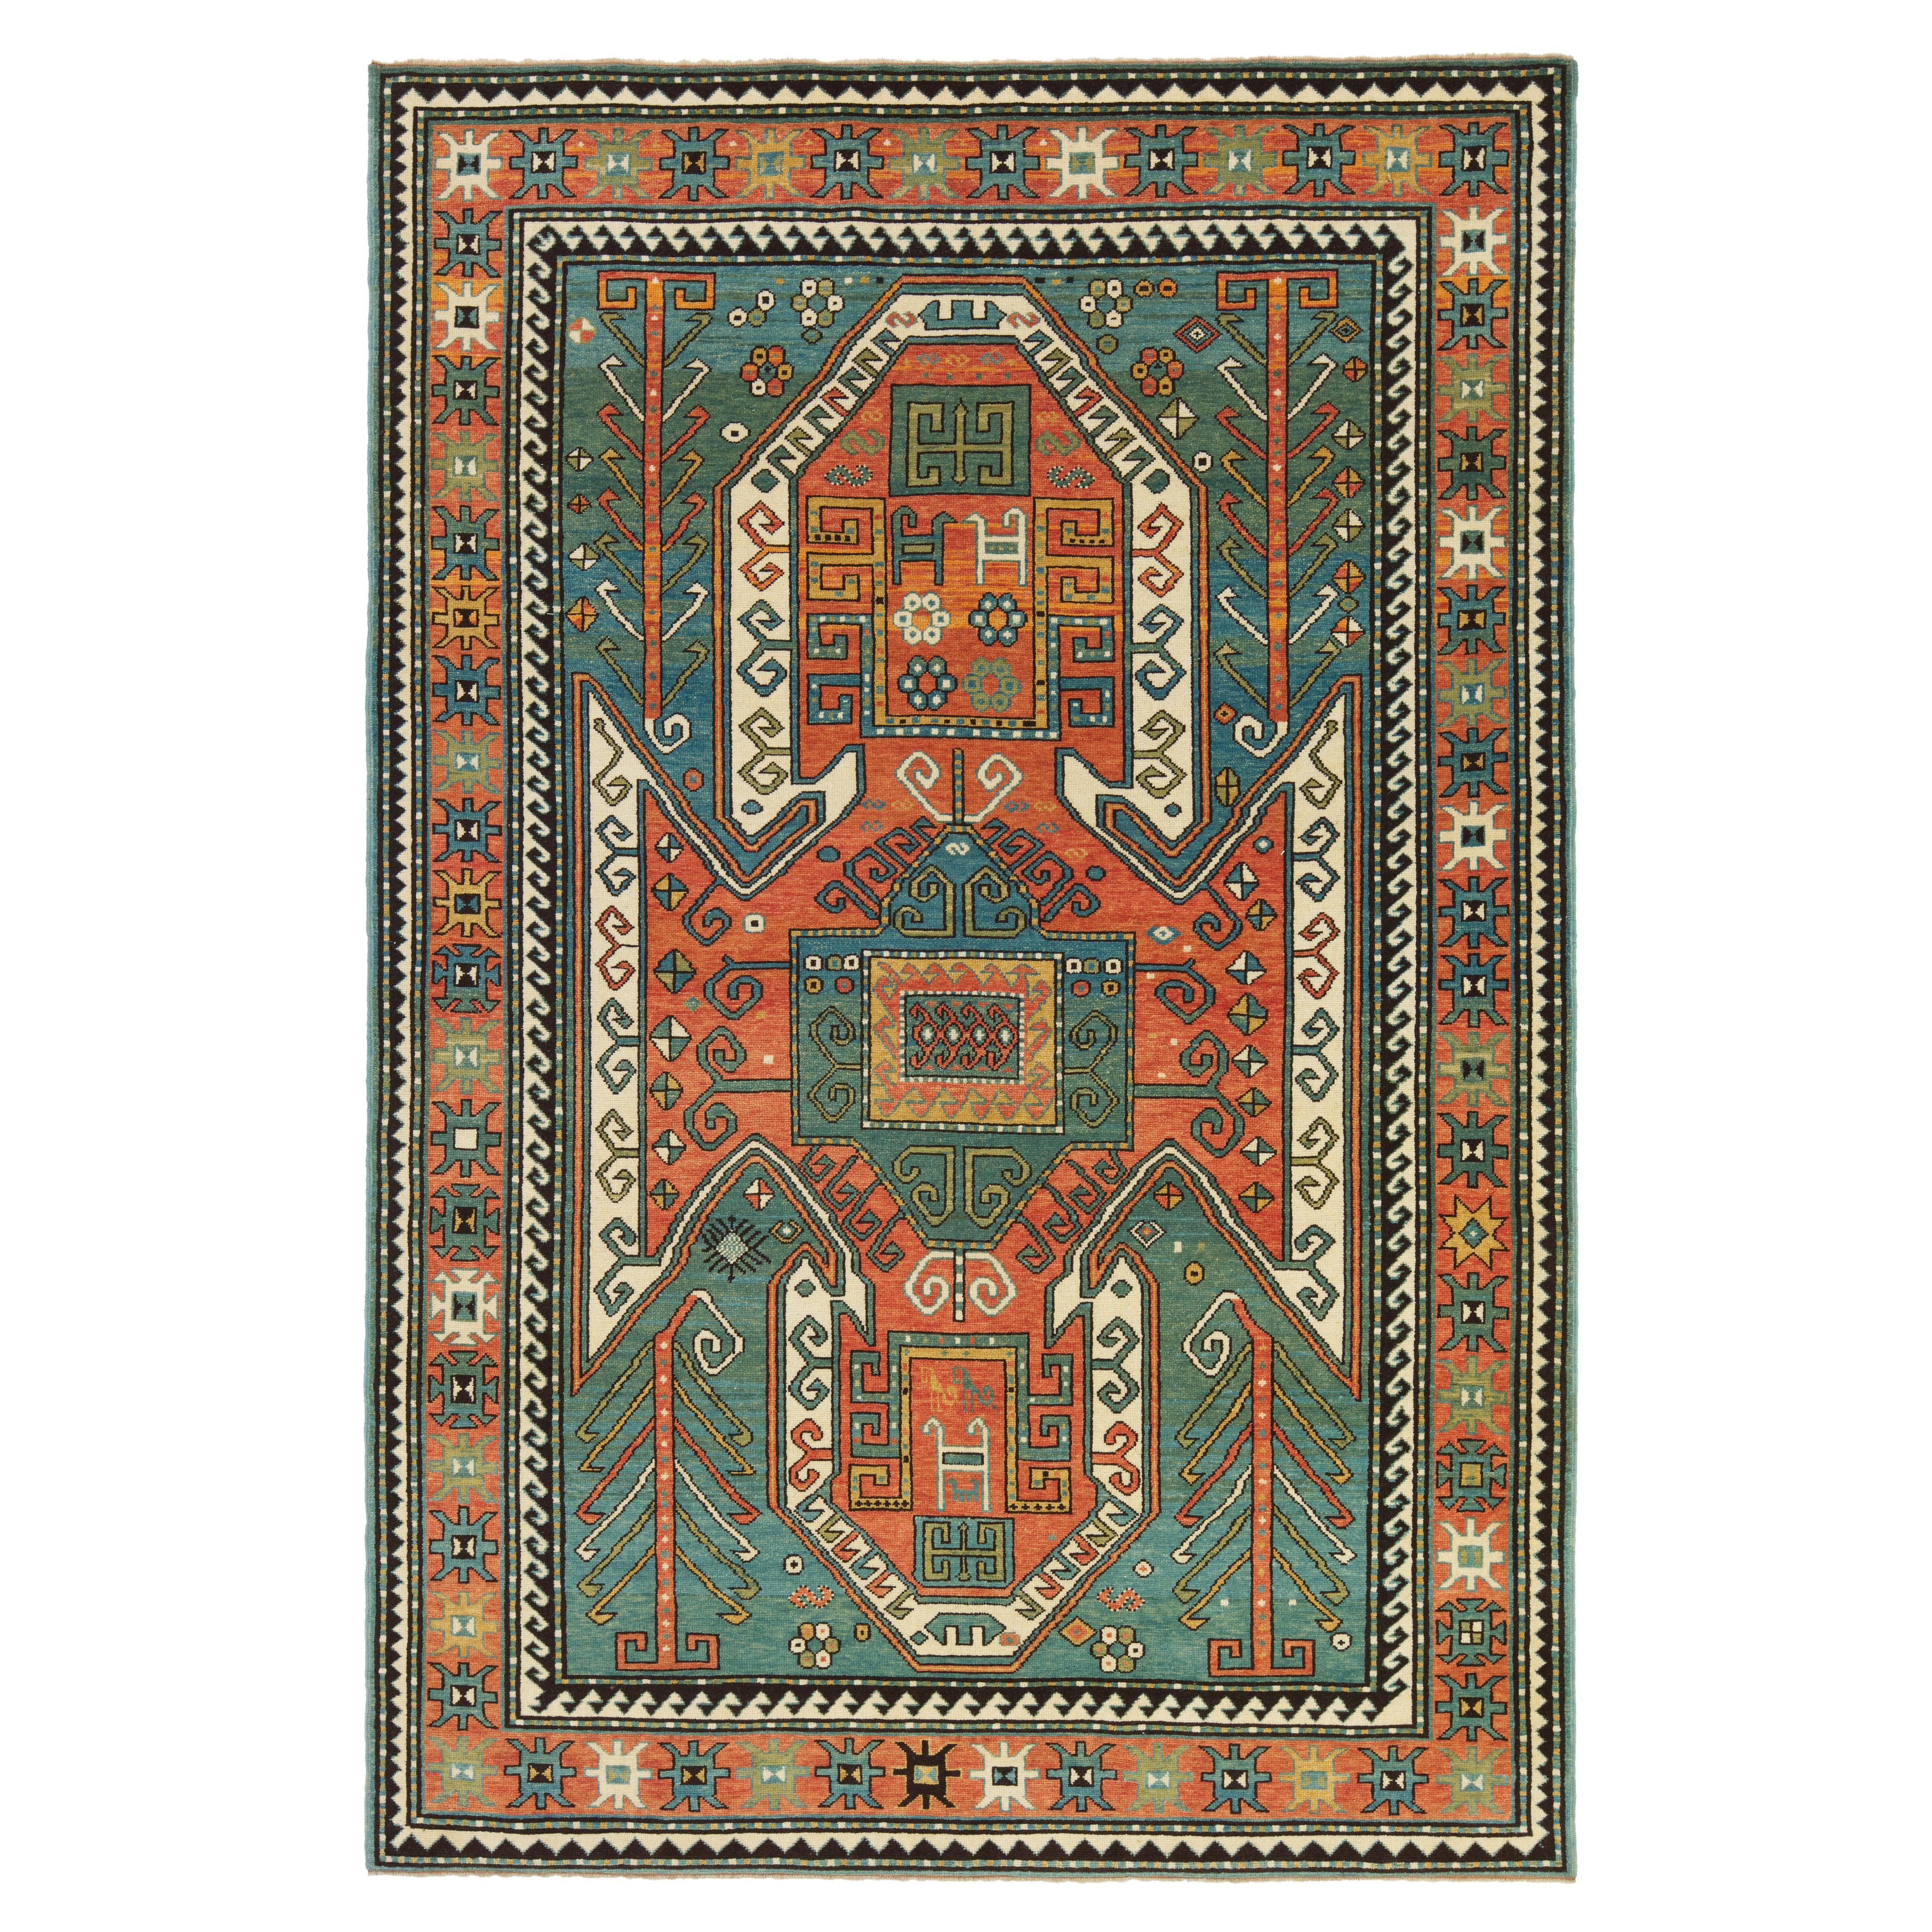 Ararat Rugs Sewan Kazak Rug, 19th Century Caucasian Revival Carpet Natural Dyed For Sale